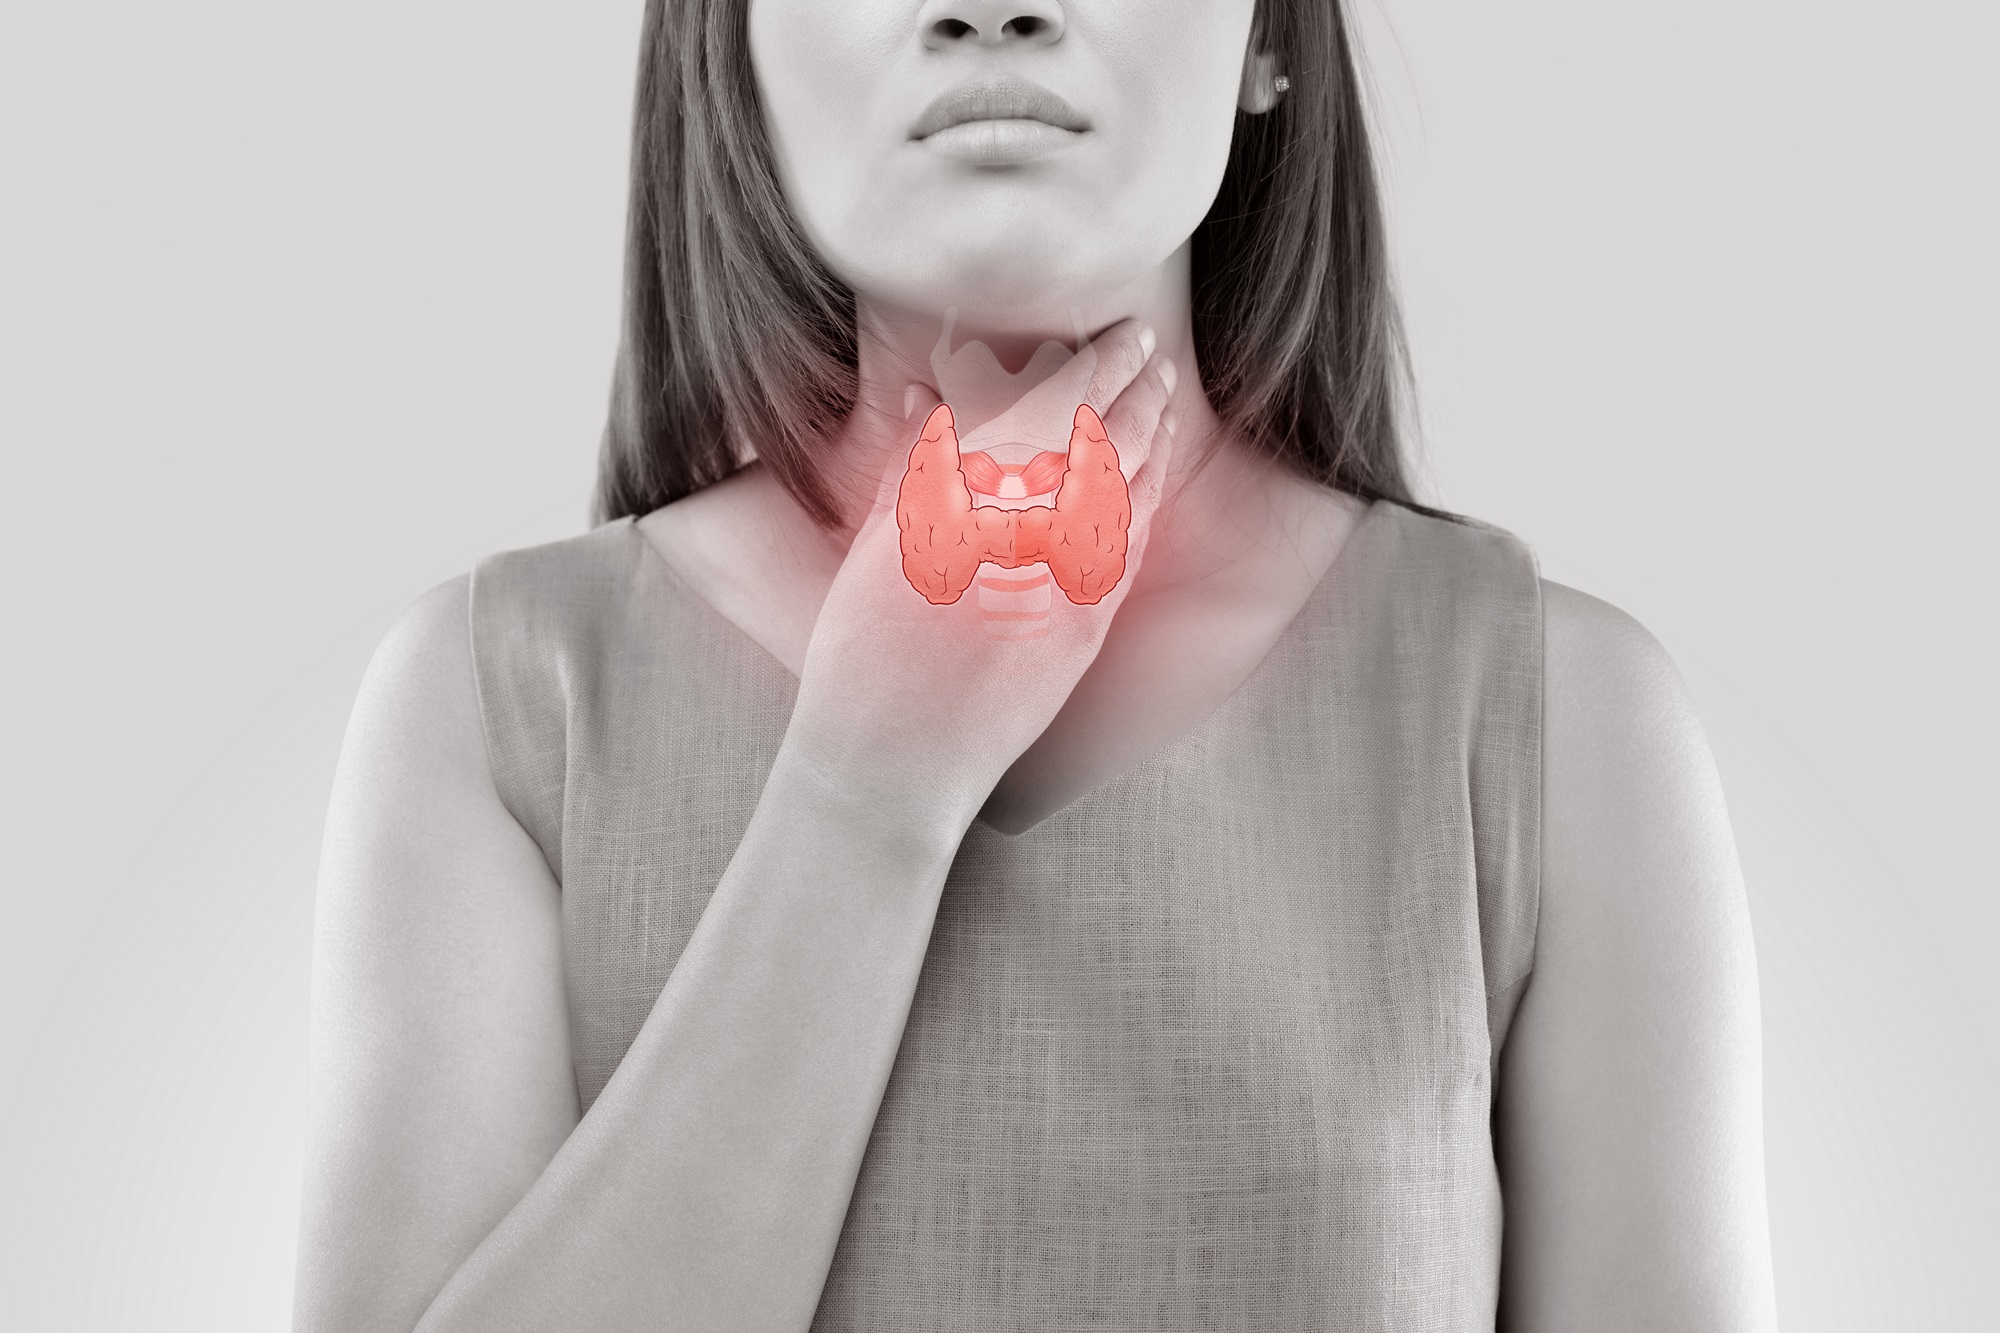 Зоб щитовидной железы - симптомы и лечение